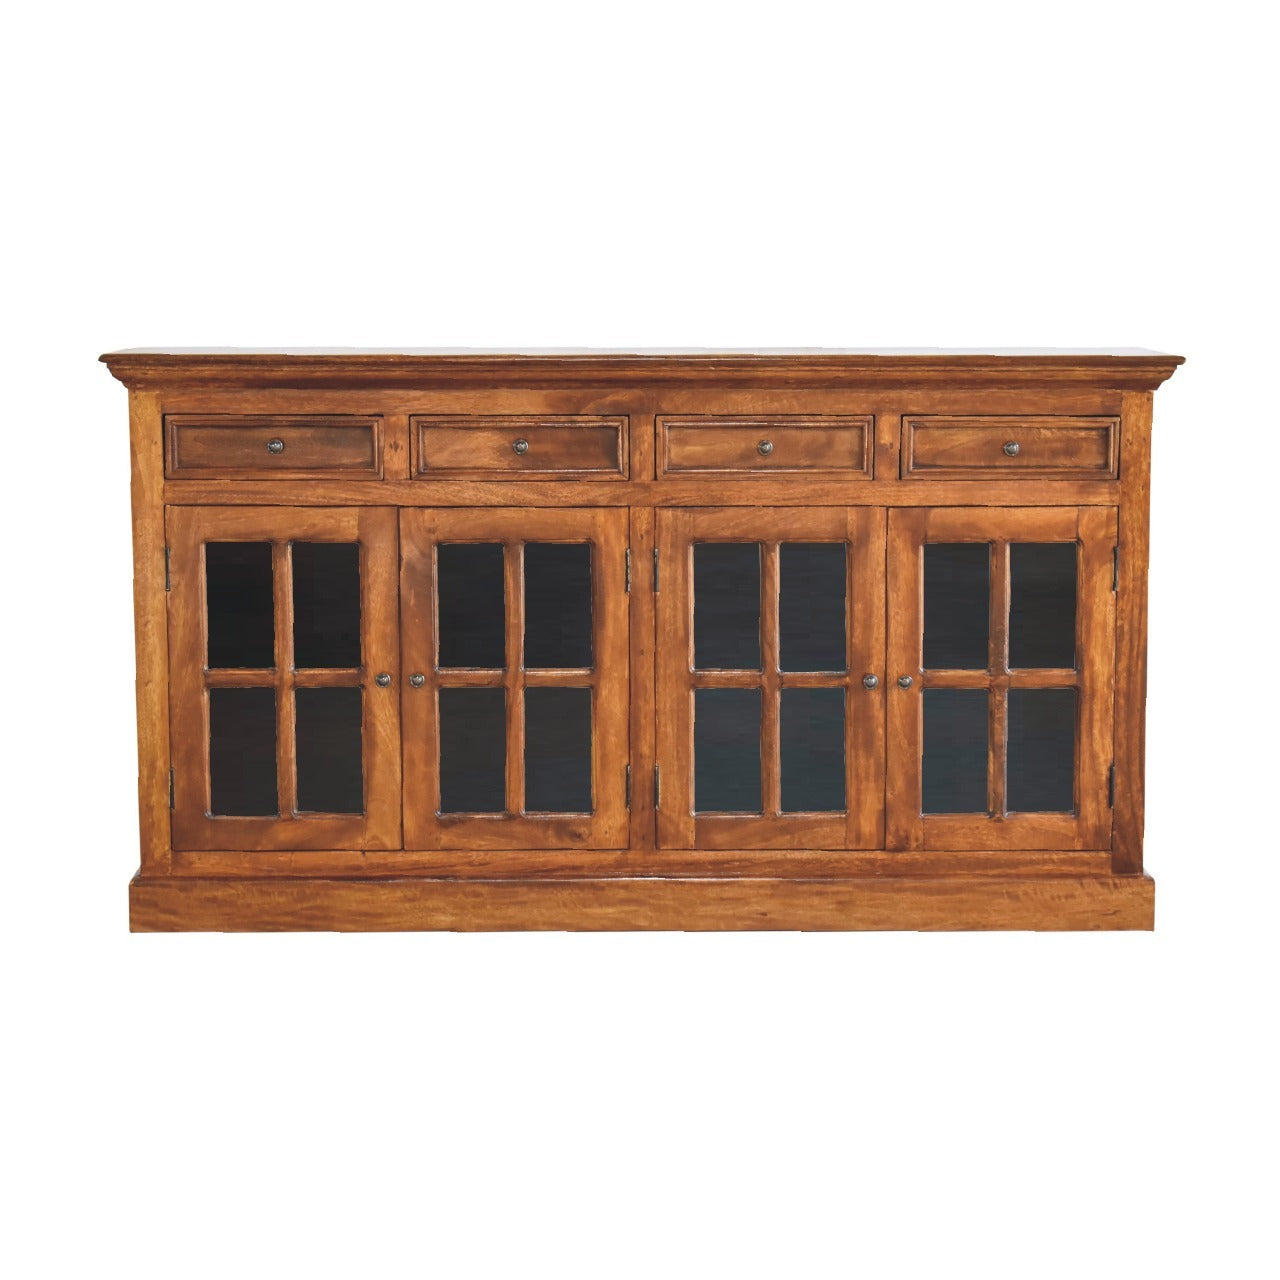 Large Glazed Sideboard - Chestnut Solid Wood